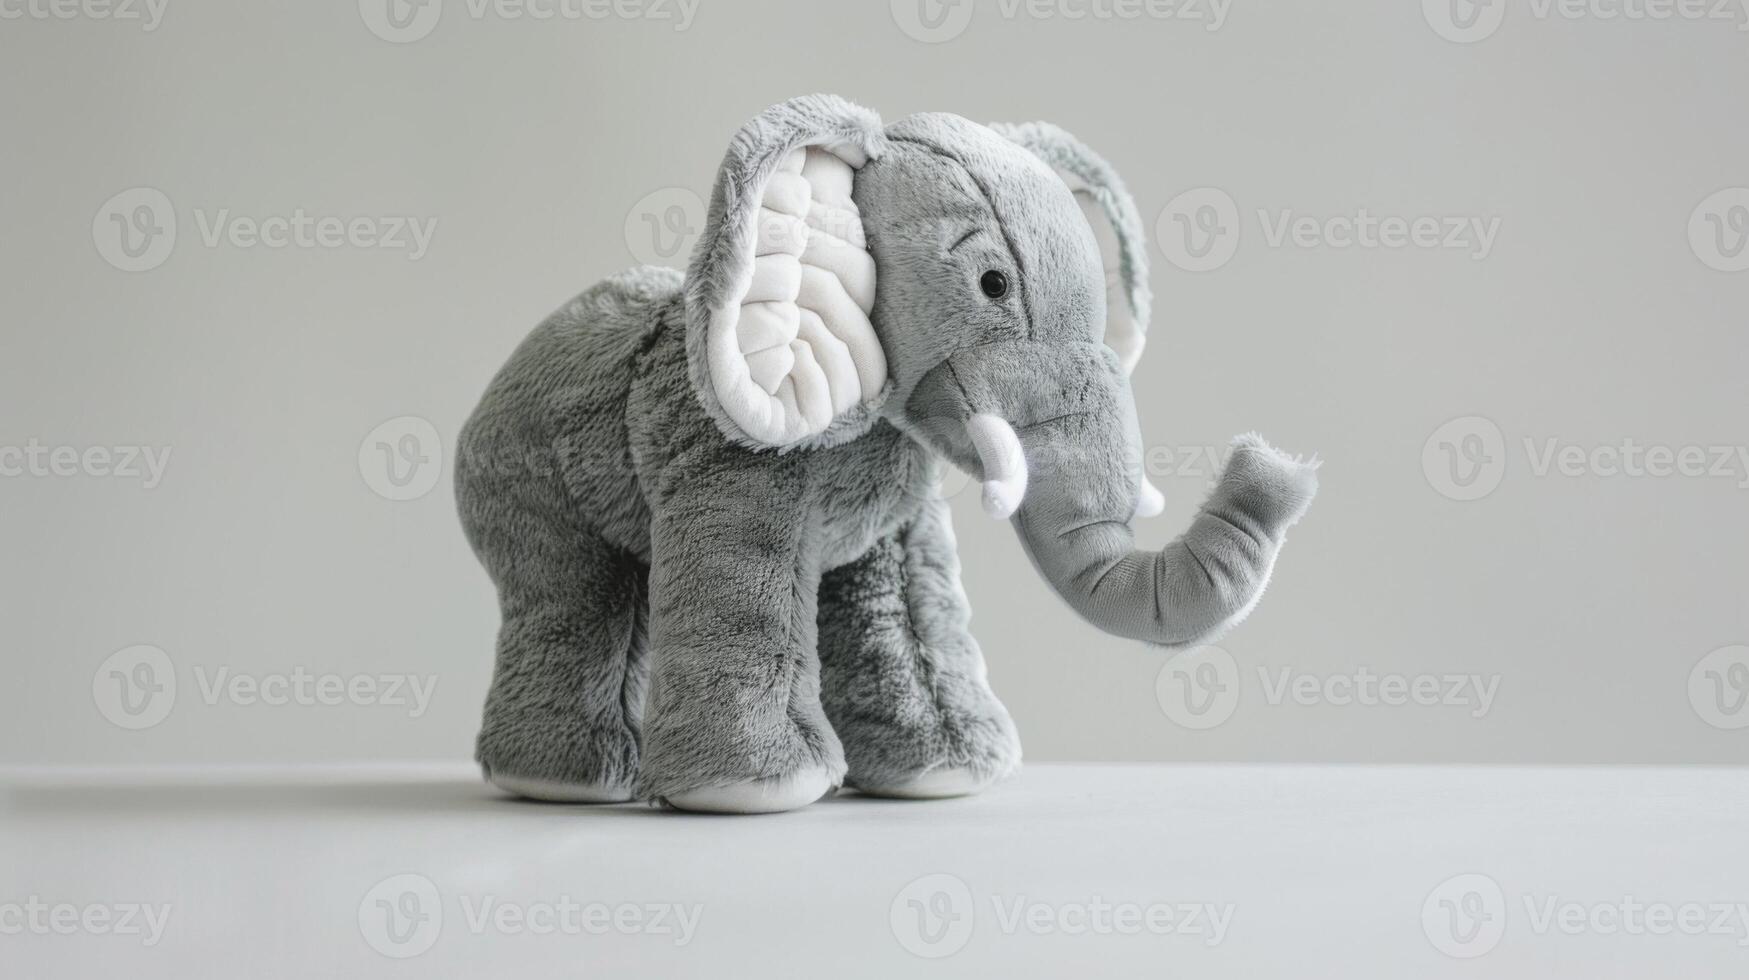 gris peluche l'éléphant jouet permanent en dehors avec ses duveteux texture et doux conception pour enfant jouer et garderie décor photo